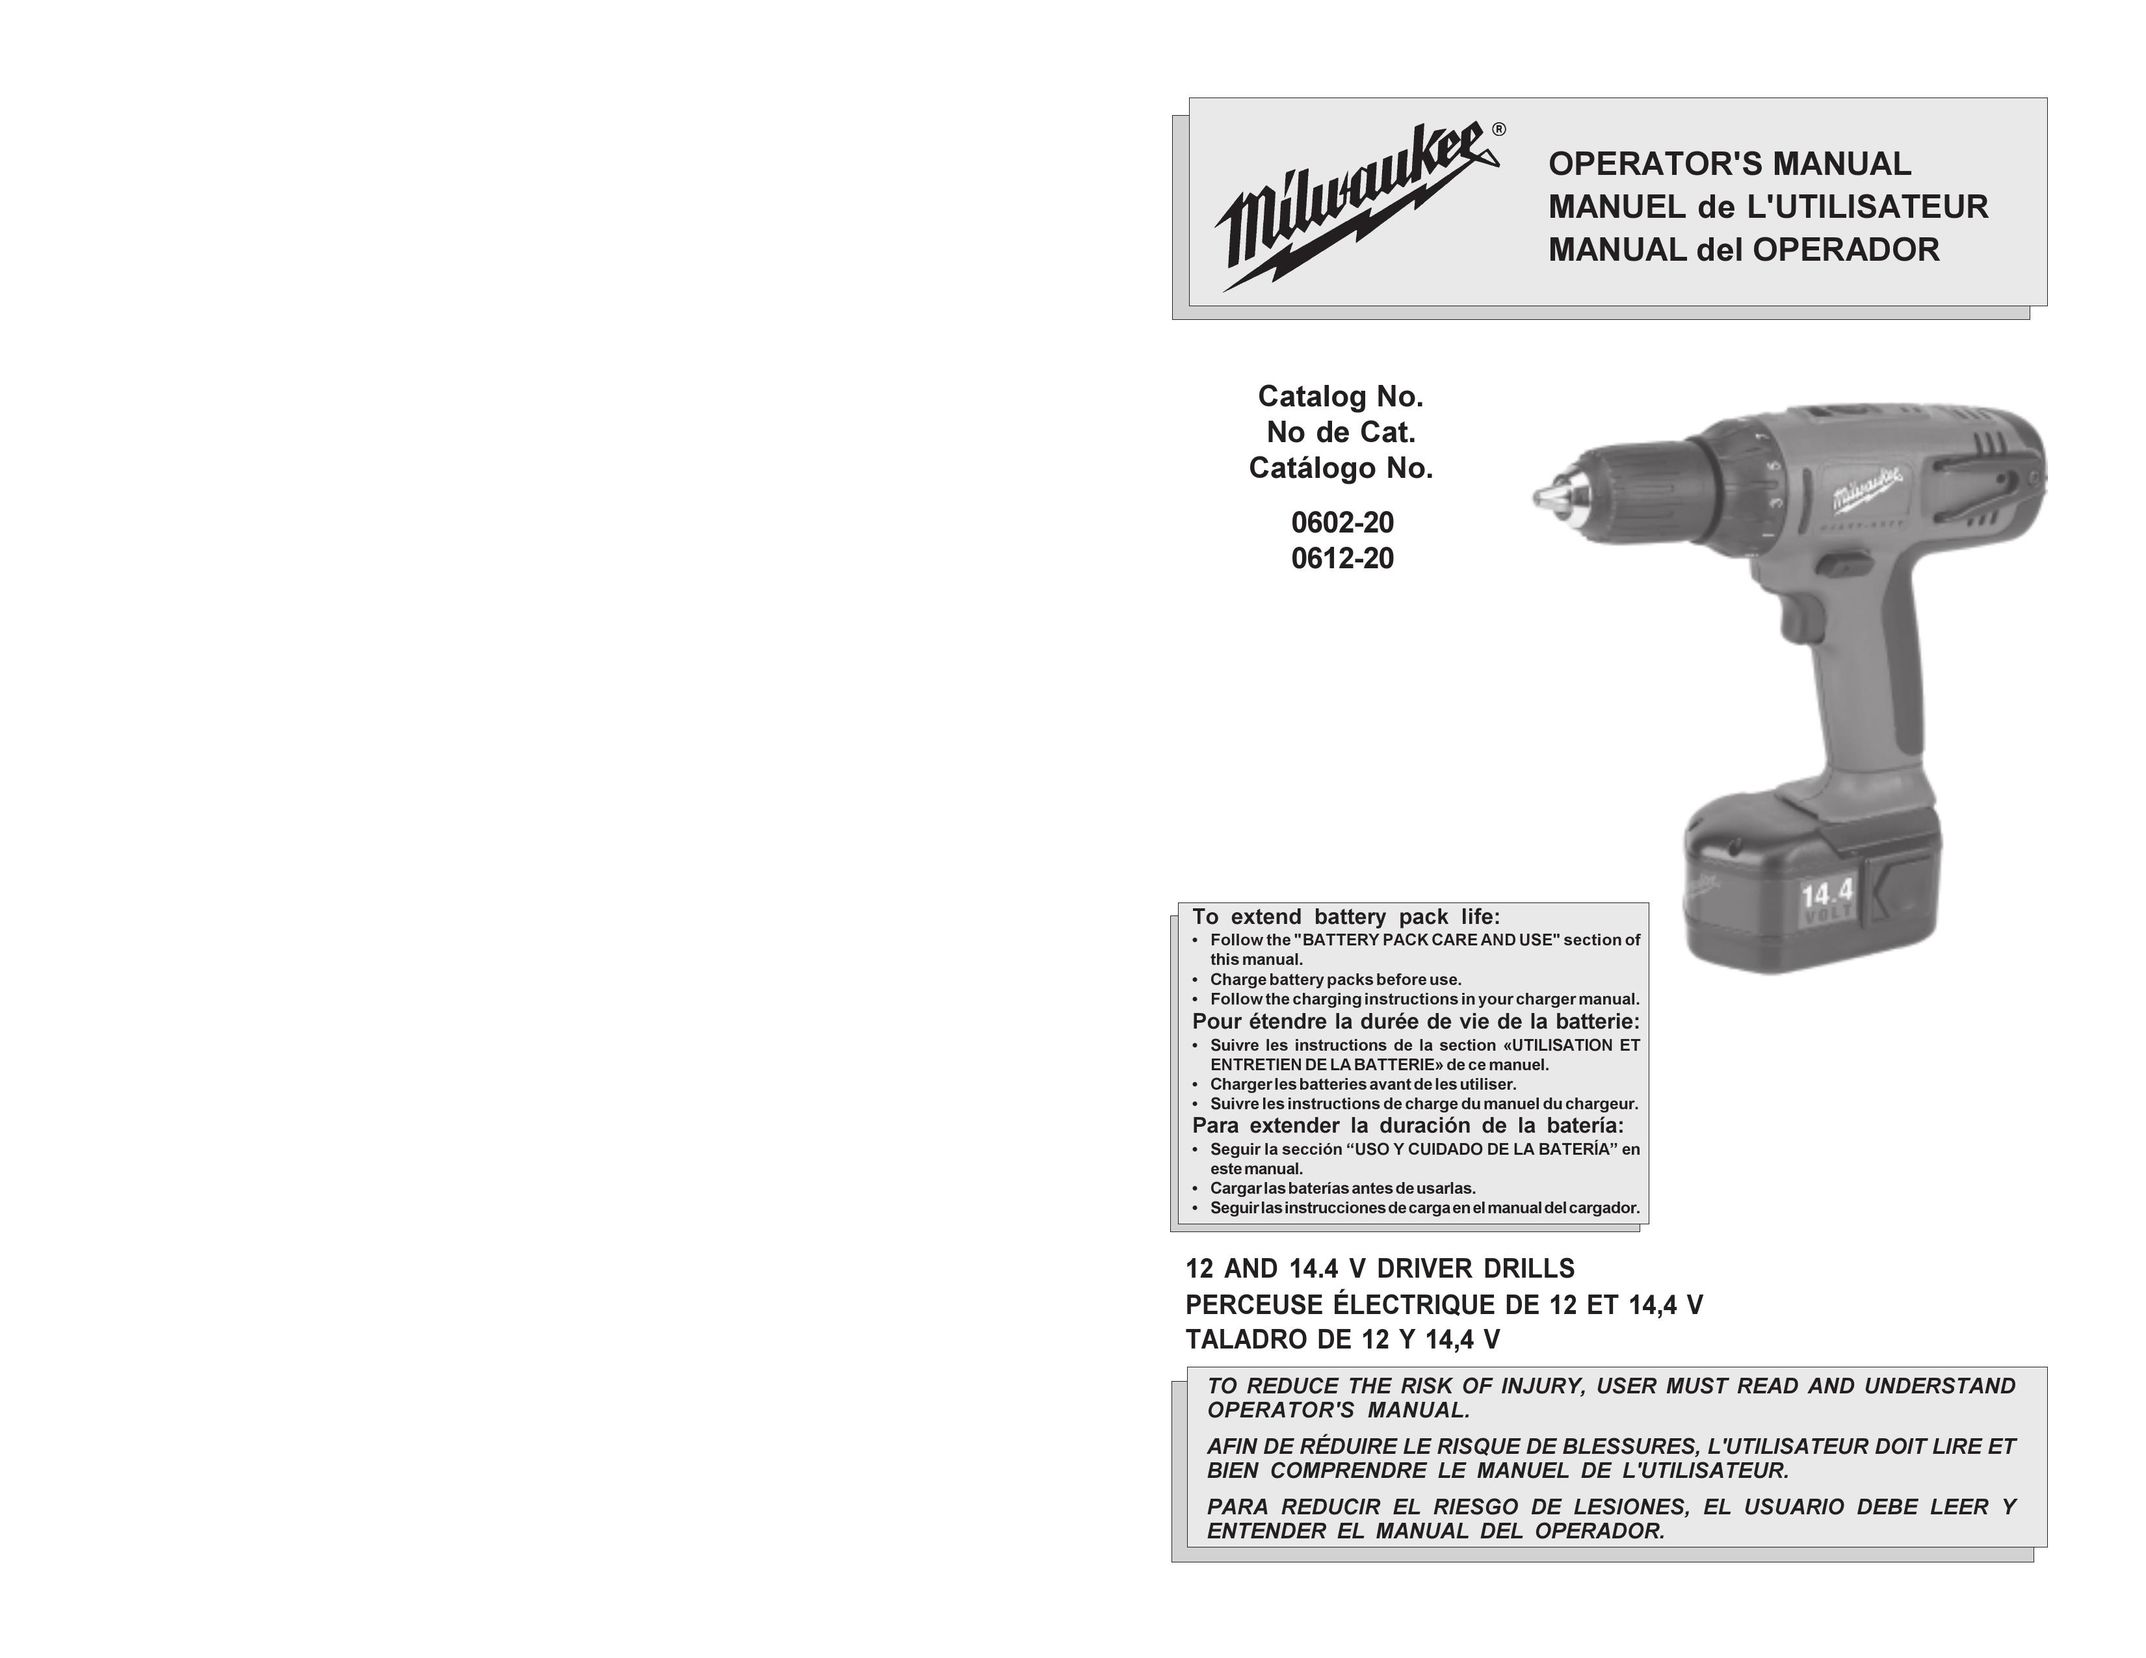 Beckett 0612-20 Drill User Manual